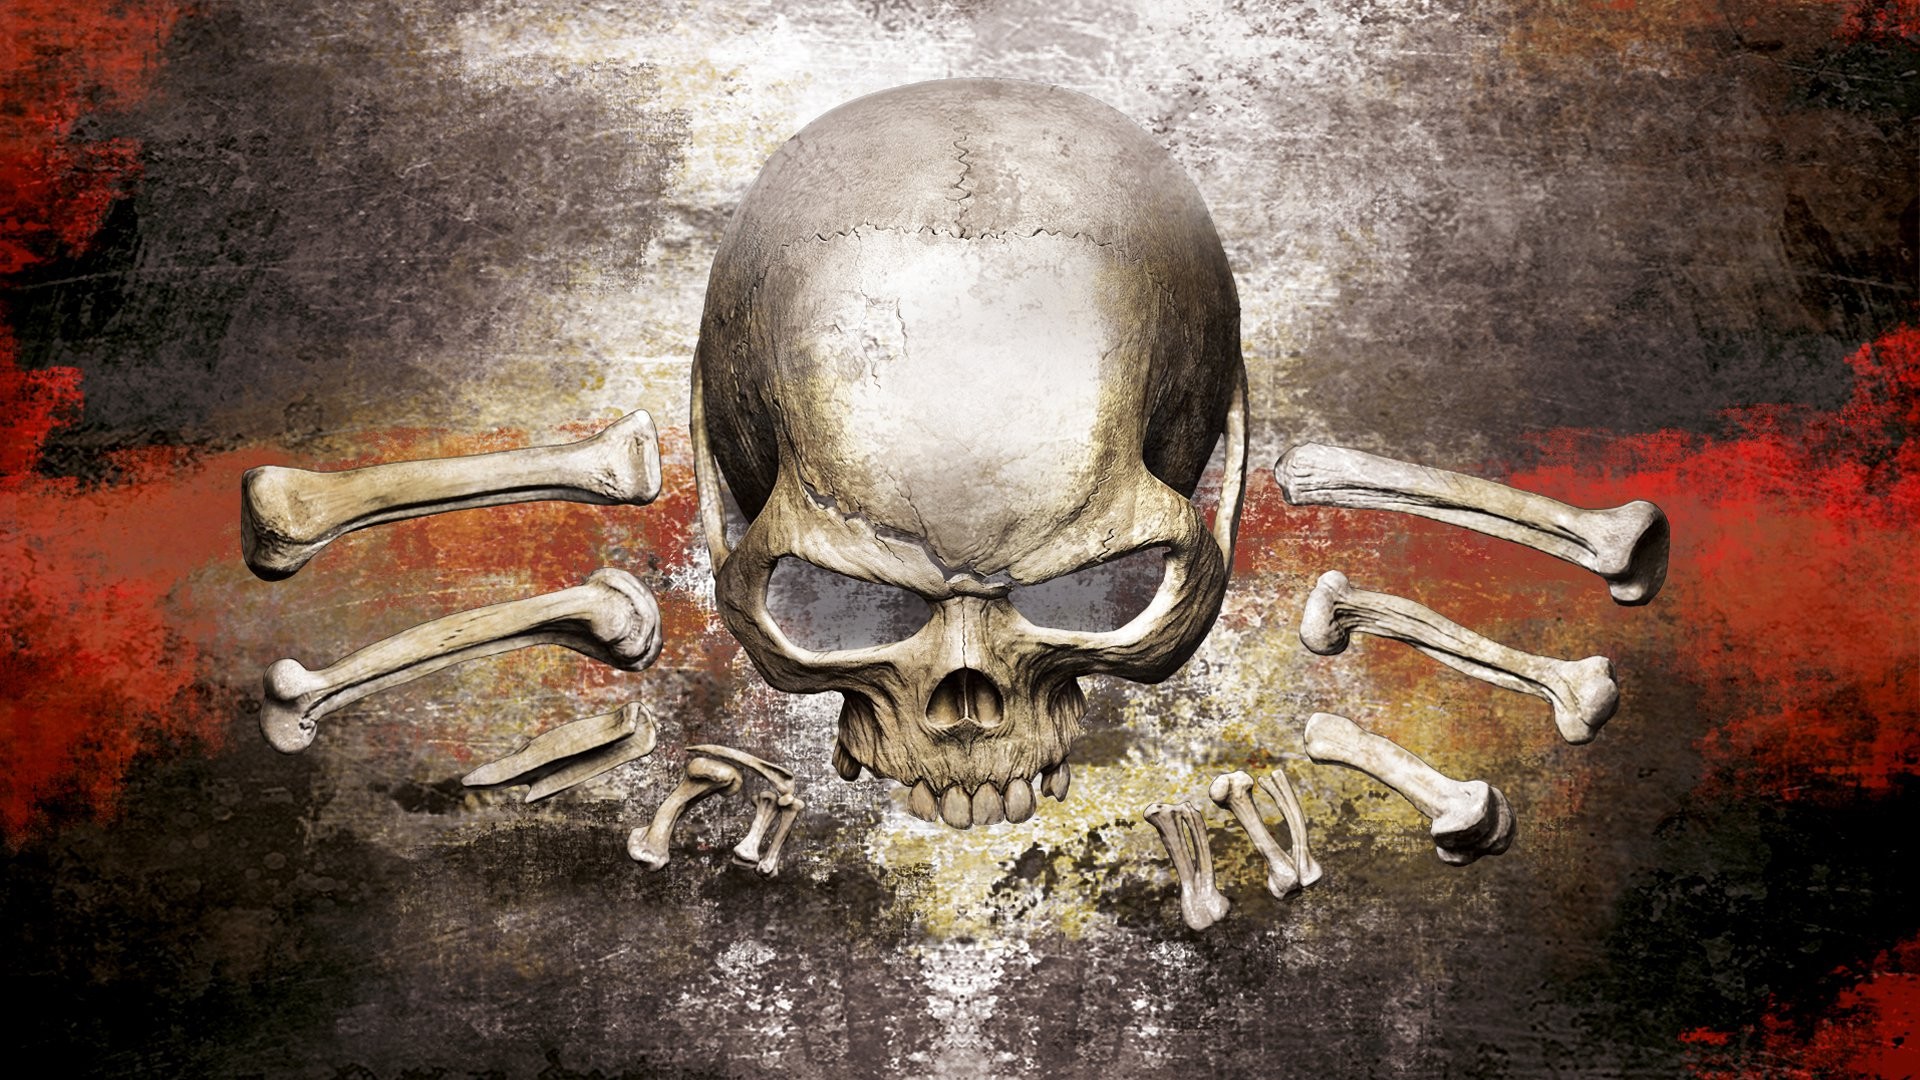 Dark Skull HD Wallpaper | Background Image | 1920x1080 3d Skull Wallpaper Hd